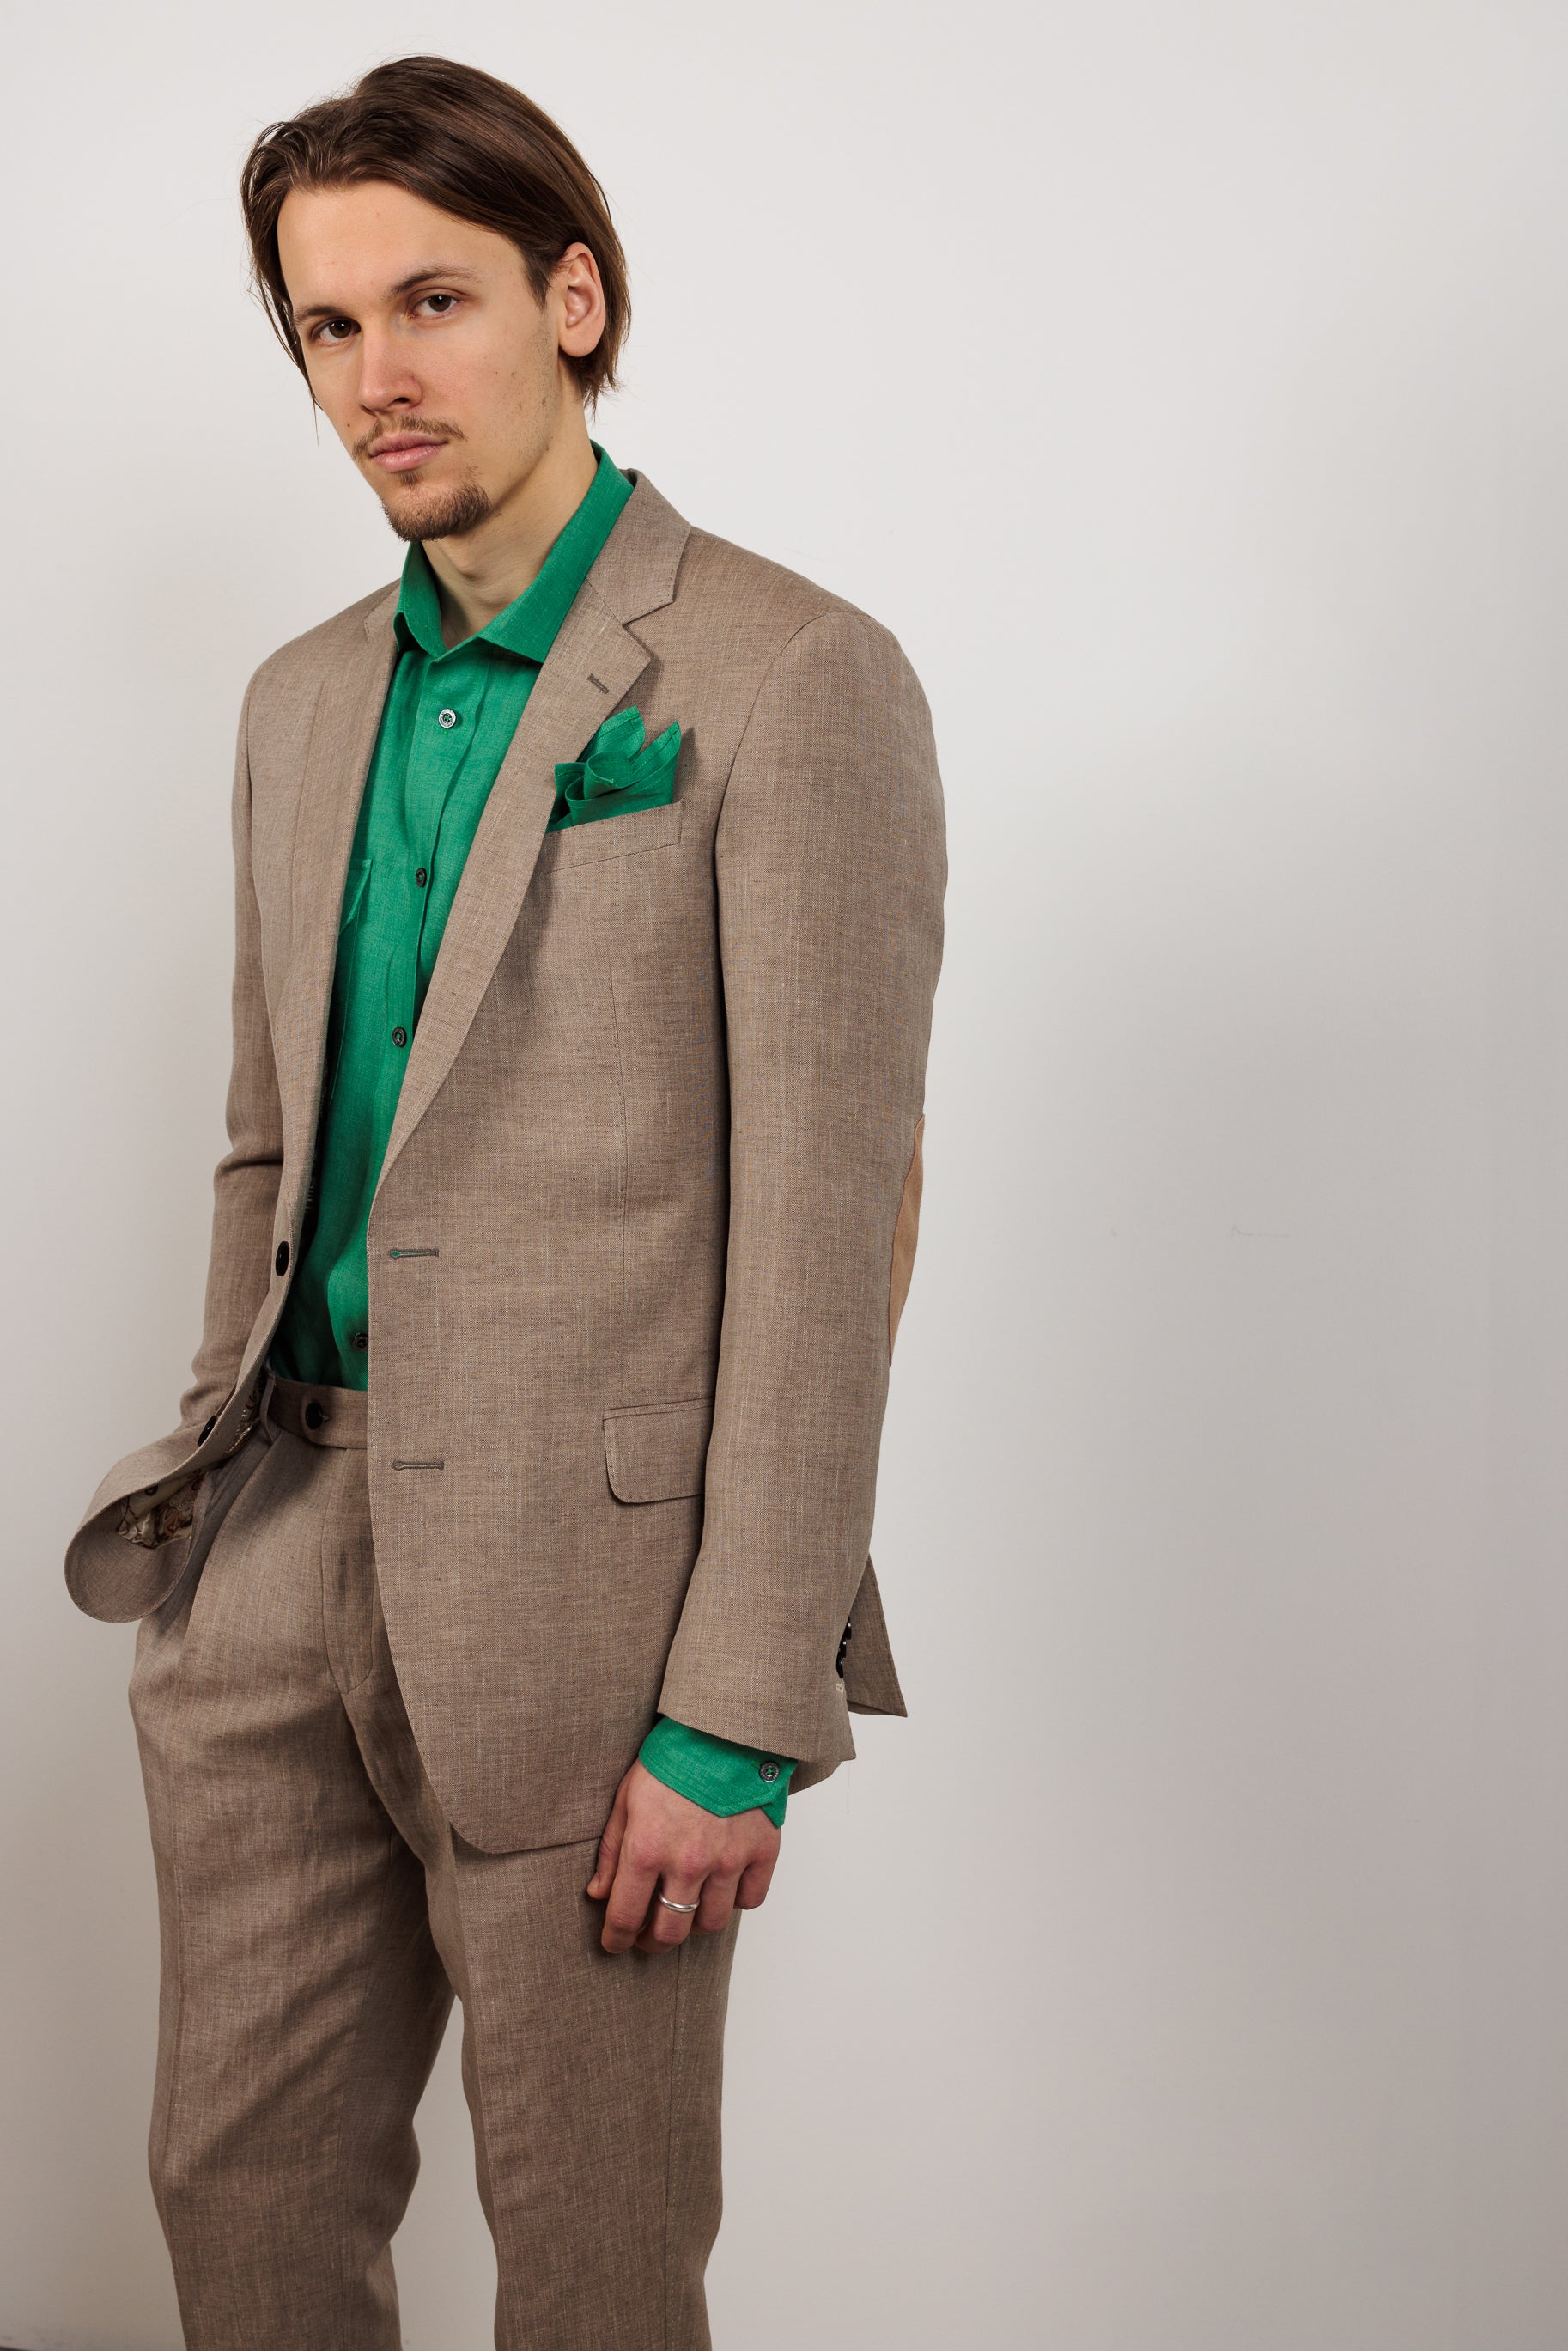 Suit "COMO" / Superfine Linen, Wool & Silk